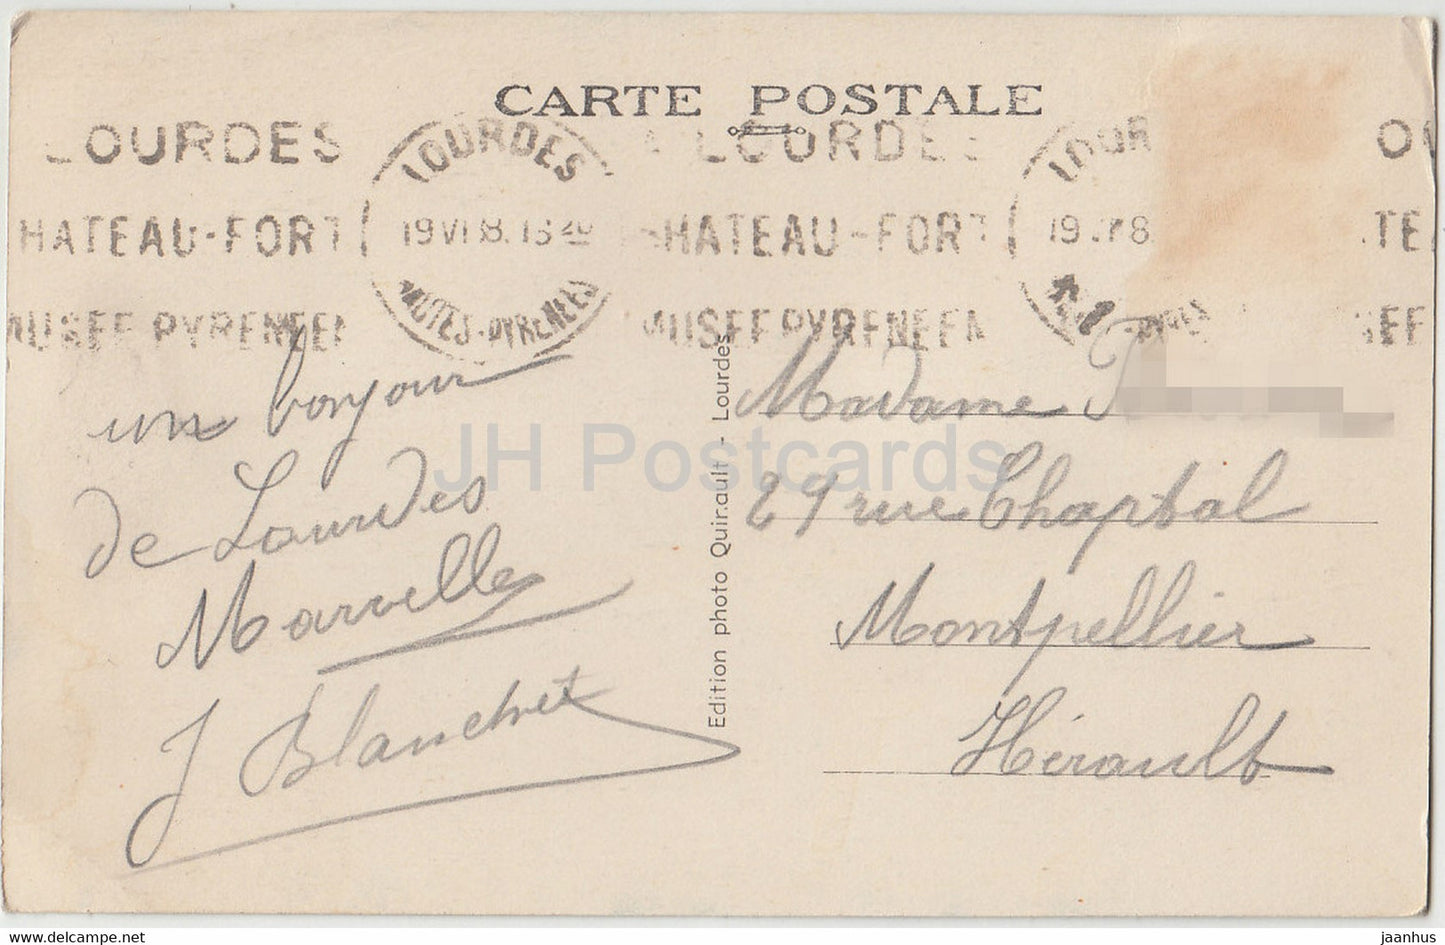 Lourdes - La Basilique et le Monument aux Morts - 34 - cathedral - old postcard - France - used